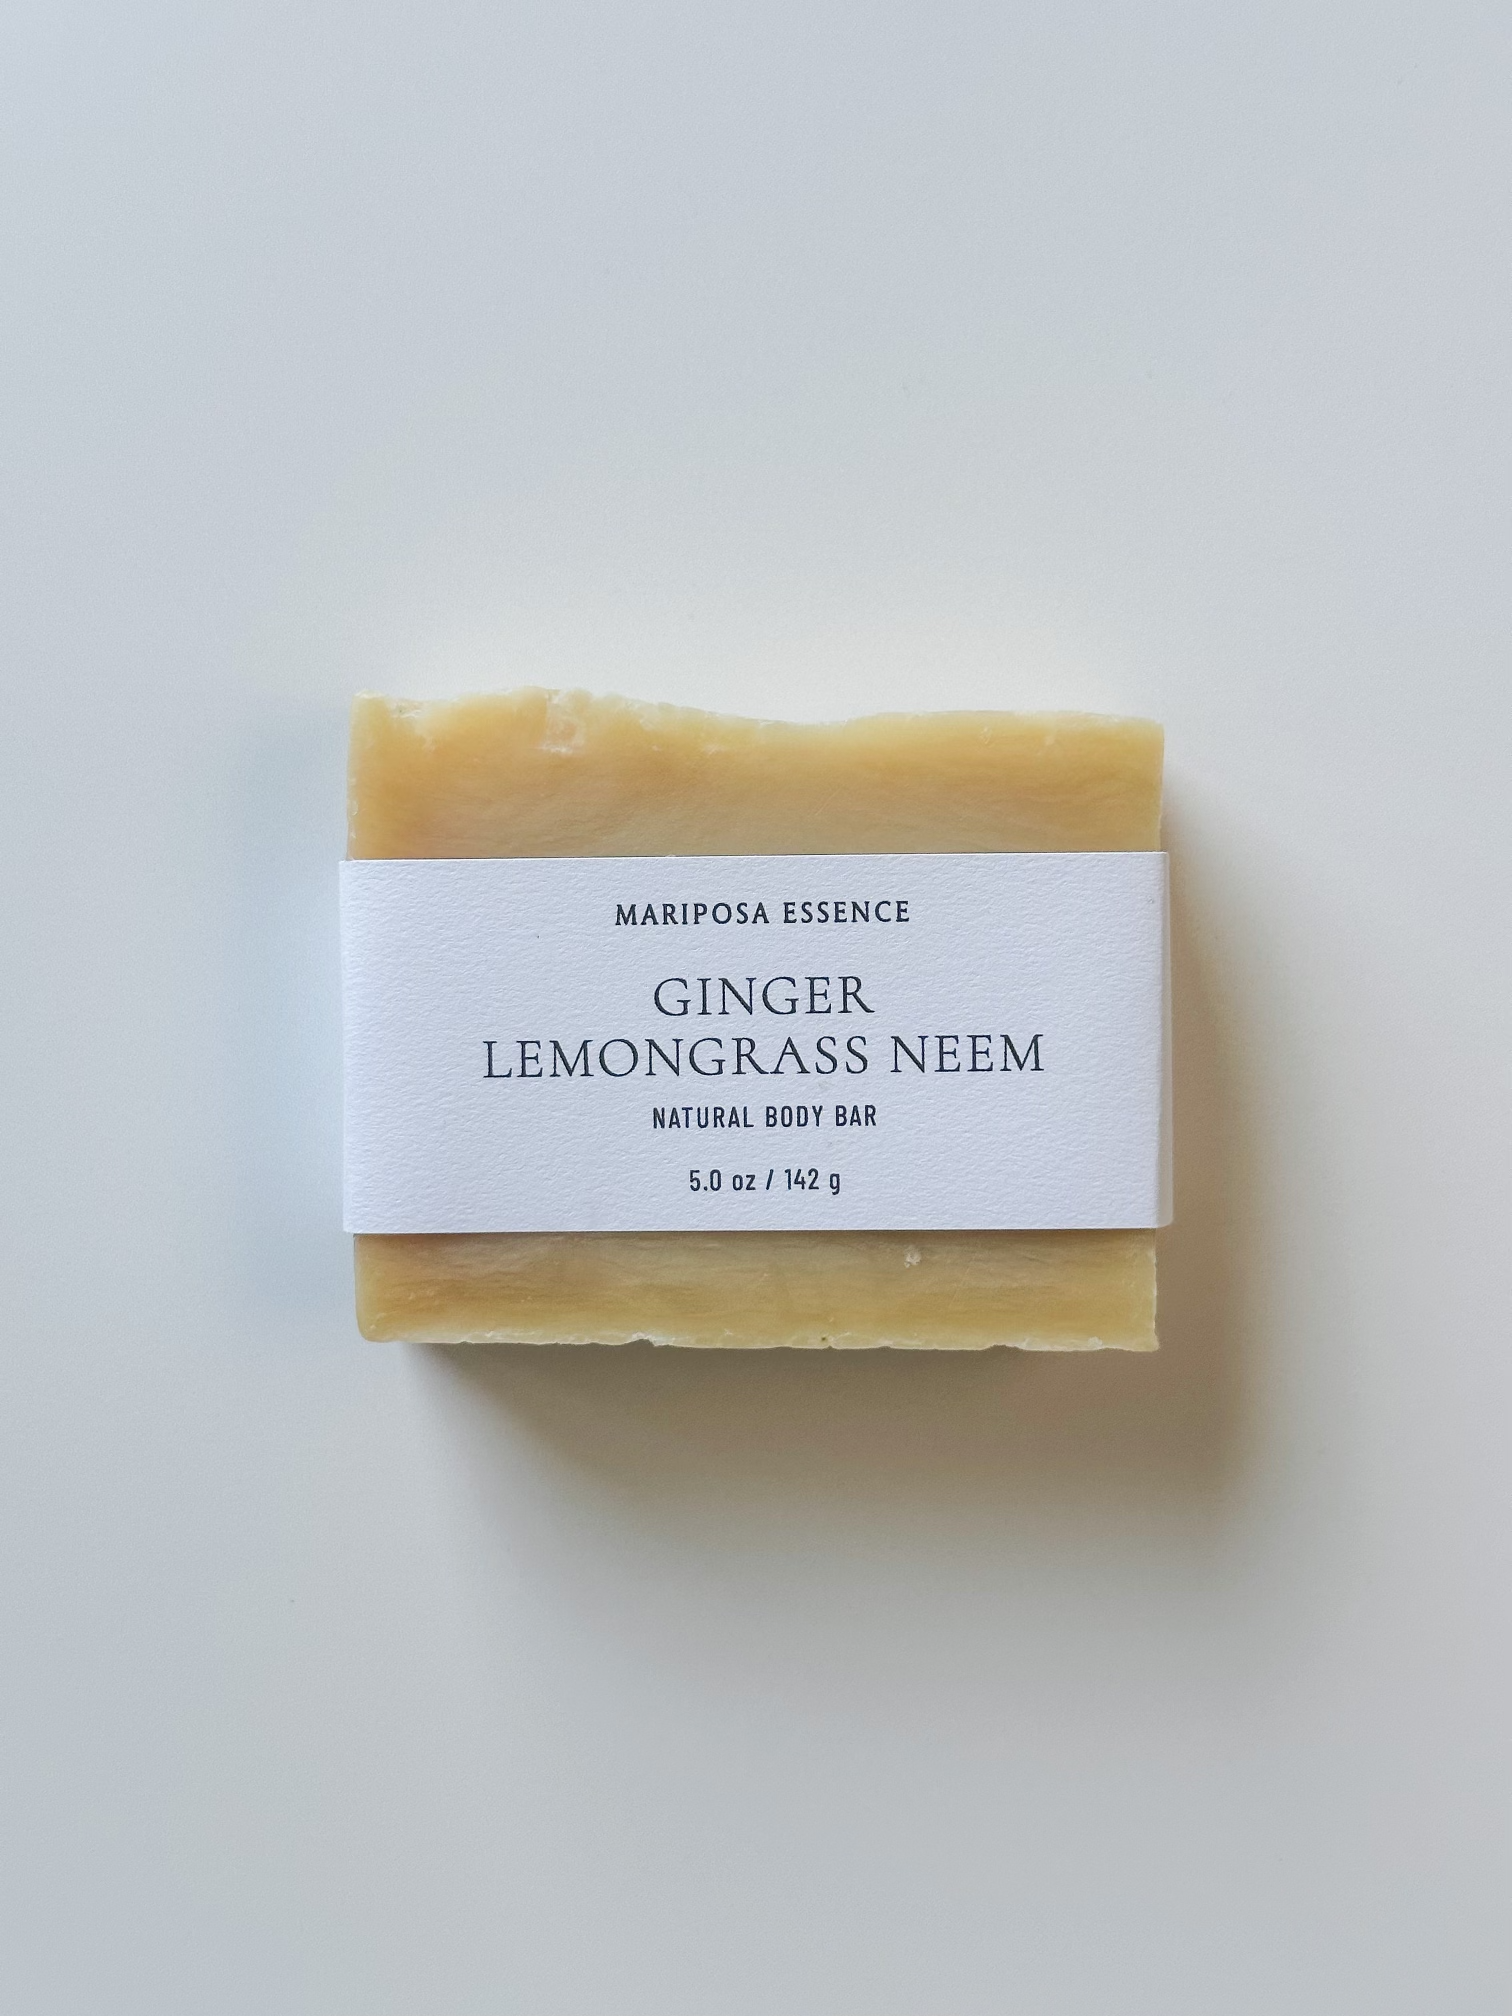 Ginger Lemongrass Neem body bar